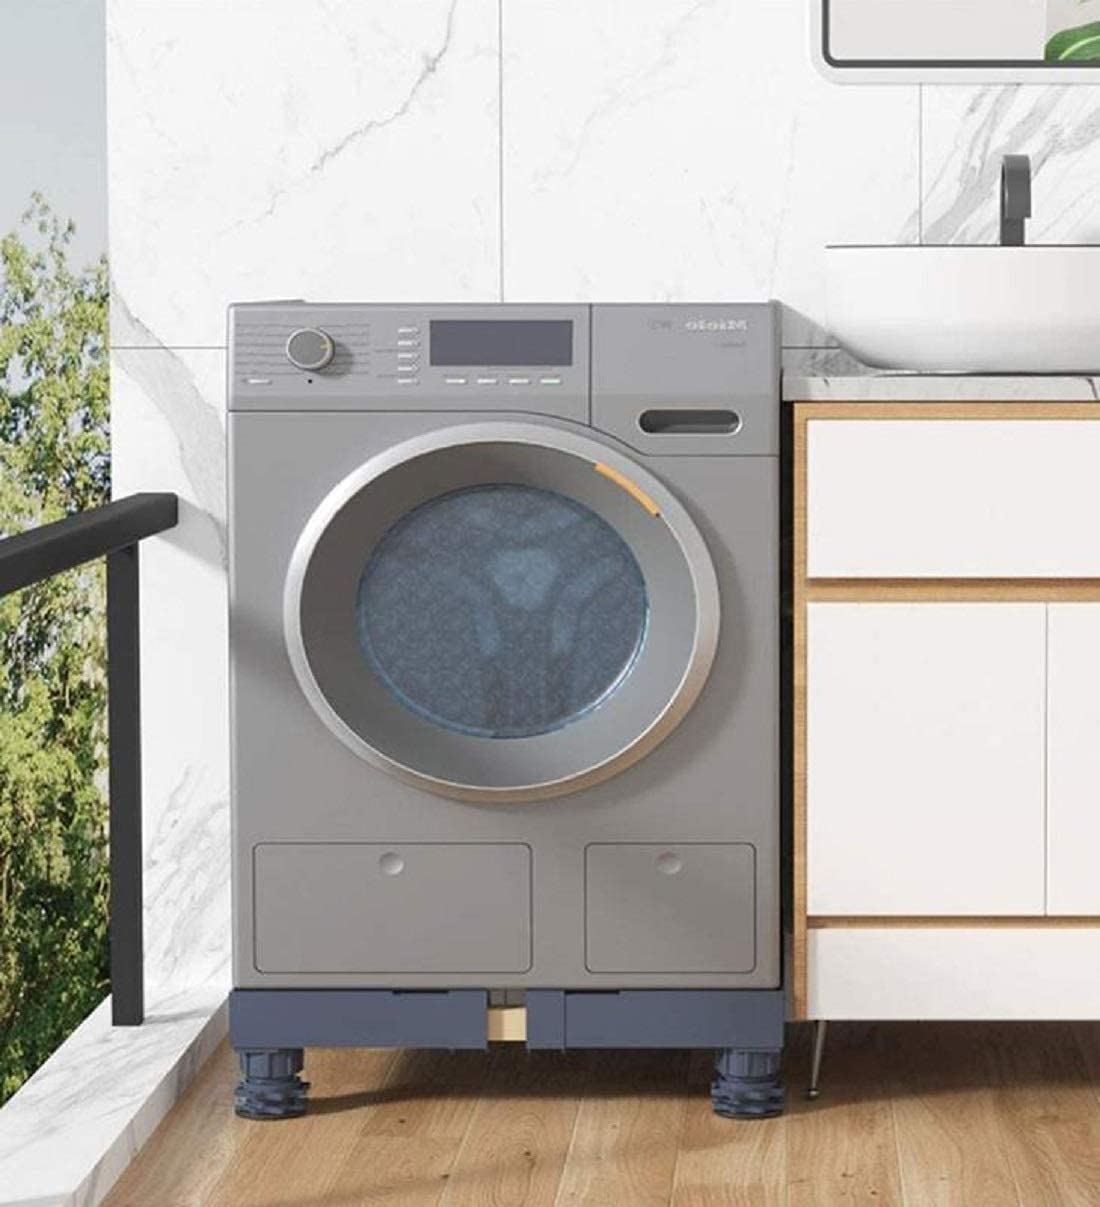 QQUN Adjustable Mini Fridge Stand- Dryer Dorm Refrigerator Washing Machine Base- Washer Pedestal- Strong Feet for Machine- (Grey)